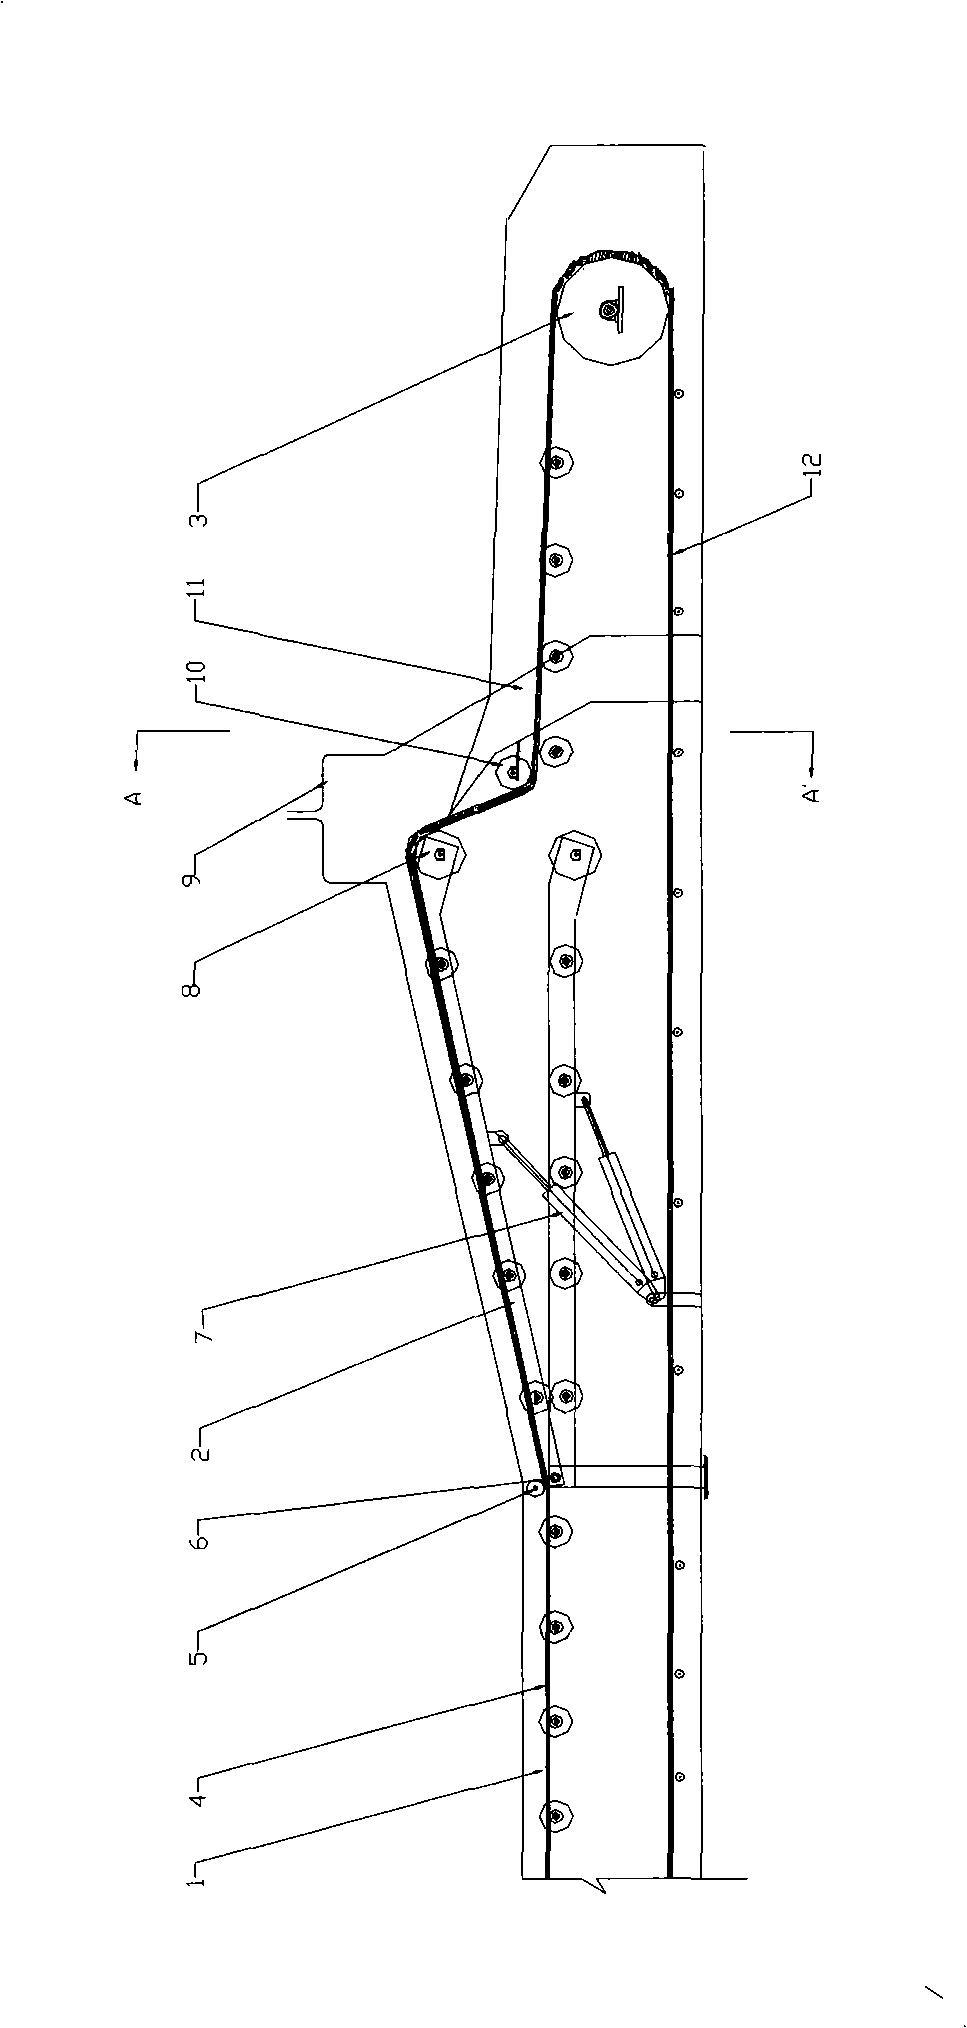 Bottom-top throwing multi-point discharging belt conveyor